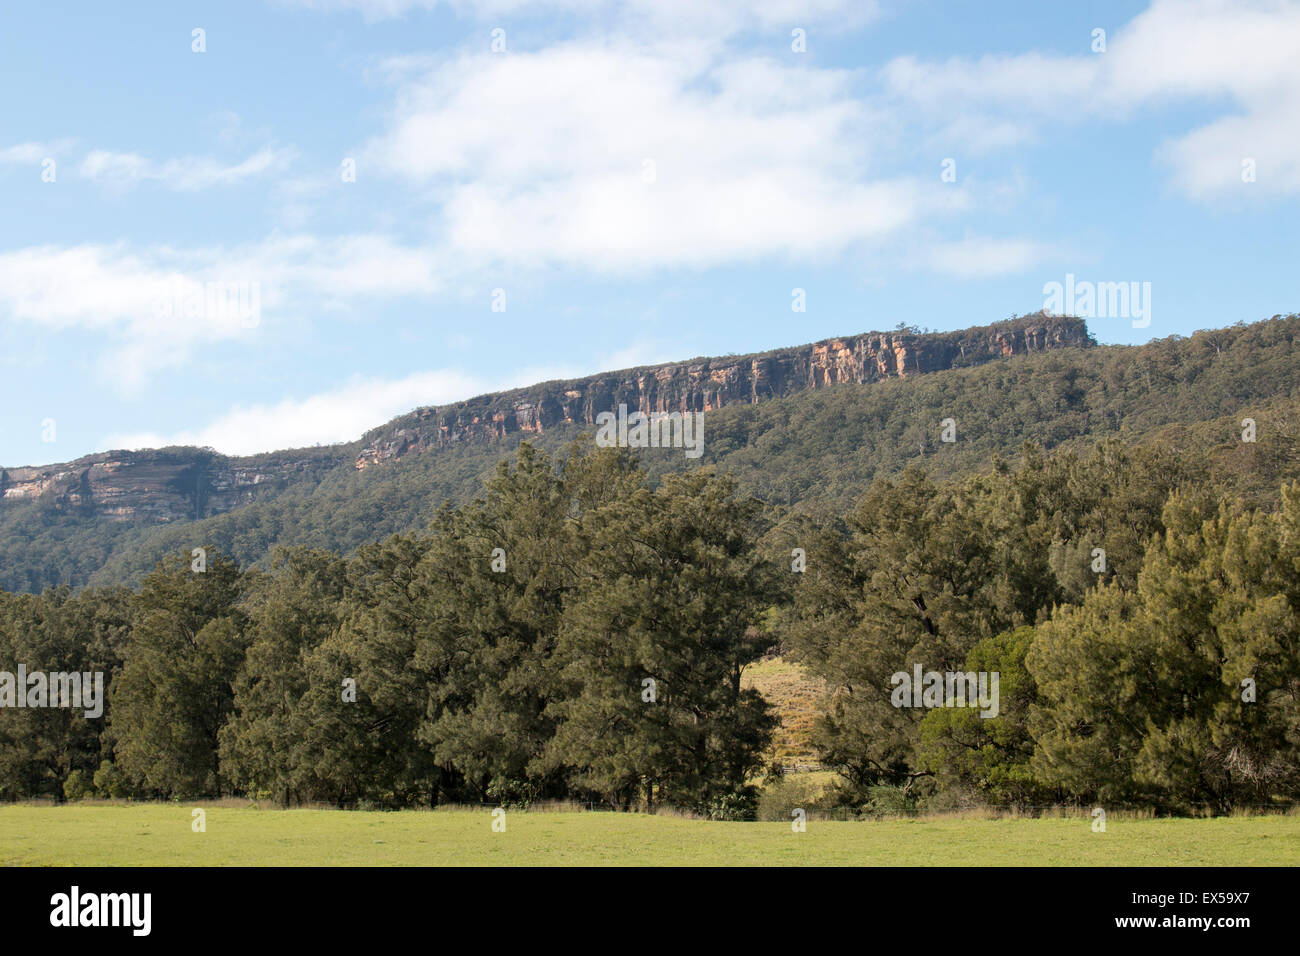 Vue sur la vallée de kangourou dans les hautes terres du sud de la Nouvelle Galles du Sud, Australie Banque D'Images